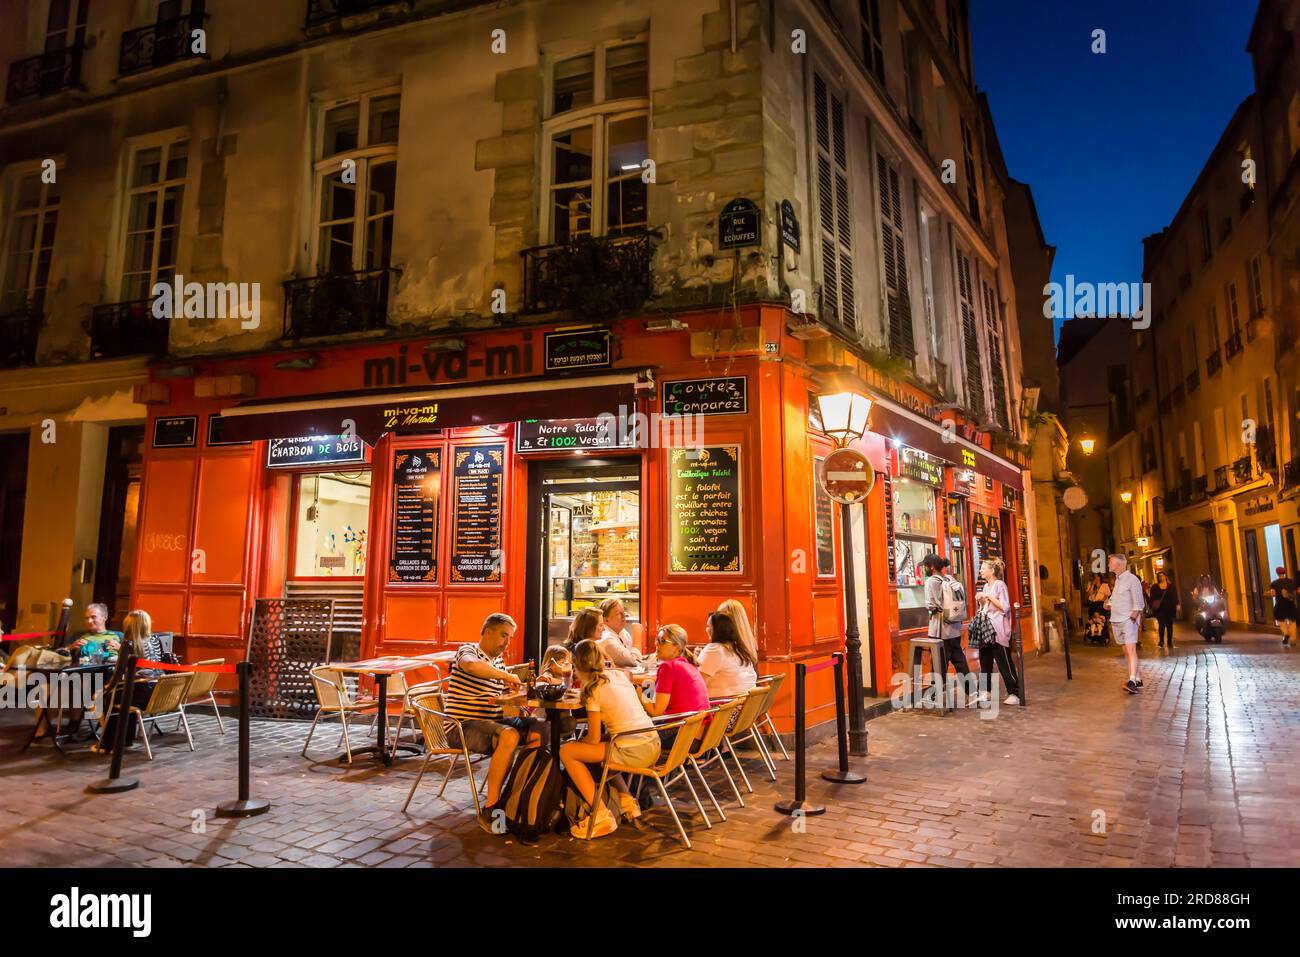 Restaurante falafel, barrio de Le Marais, París, Francia Foto de stock